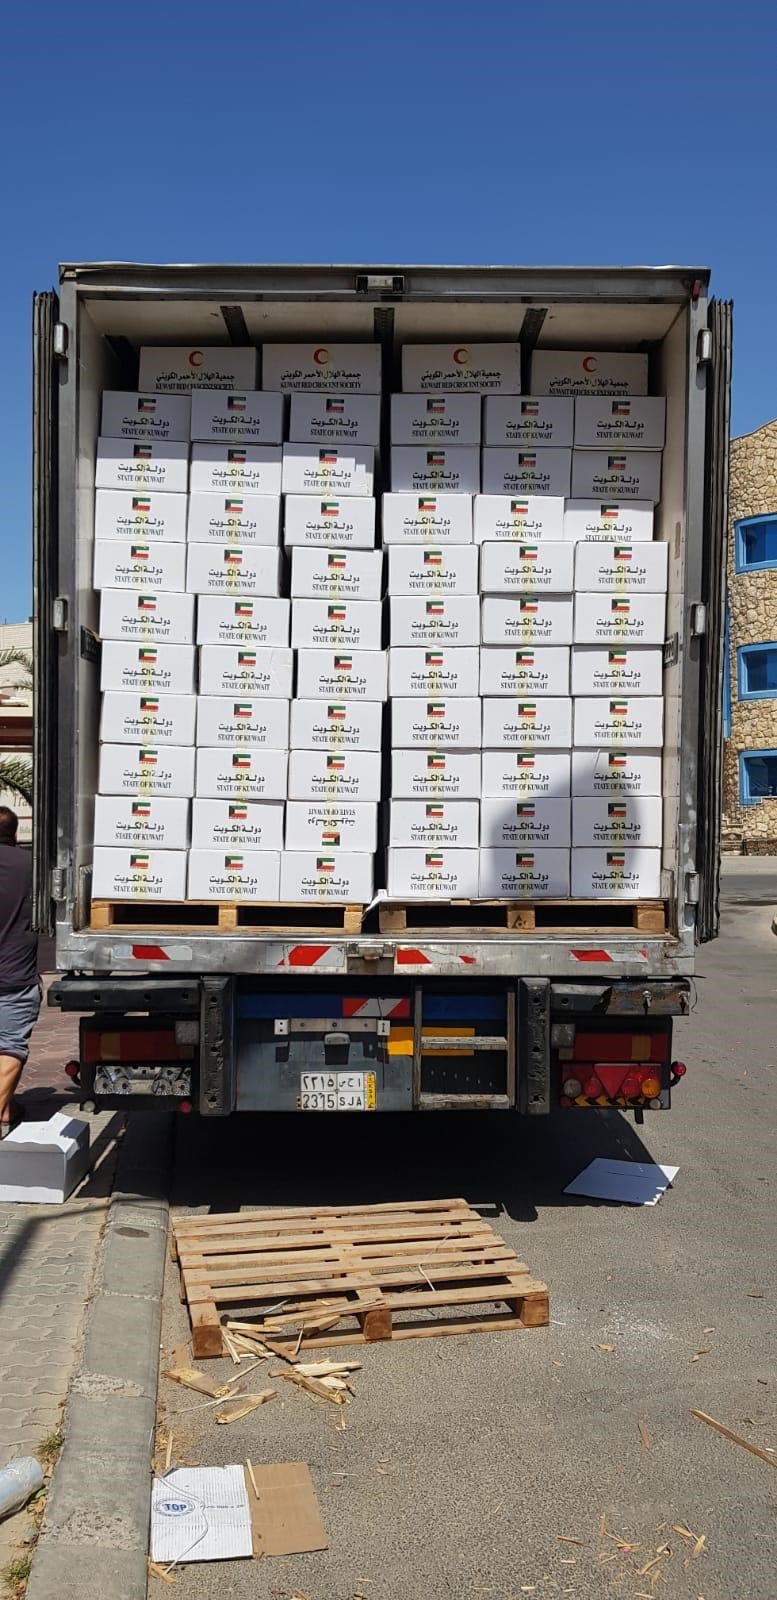 وجهت جمعية الهلال الأحمر الكويتي ثلاث شاحنات محملة بمواد إغاثية مختلفة إلى اليمن عبر الأراضي السعودية لتقديم العون والاغاثة للأشقاء هناك